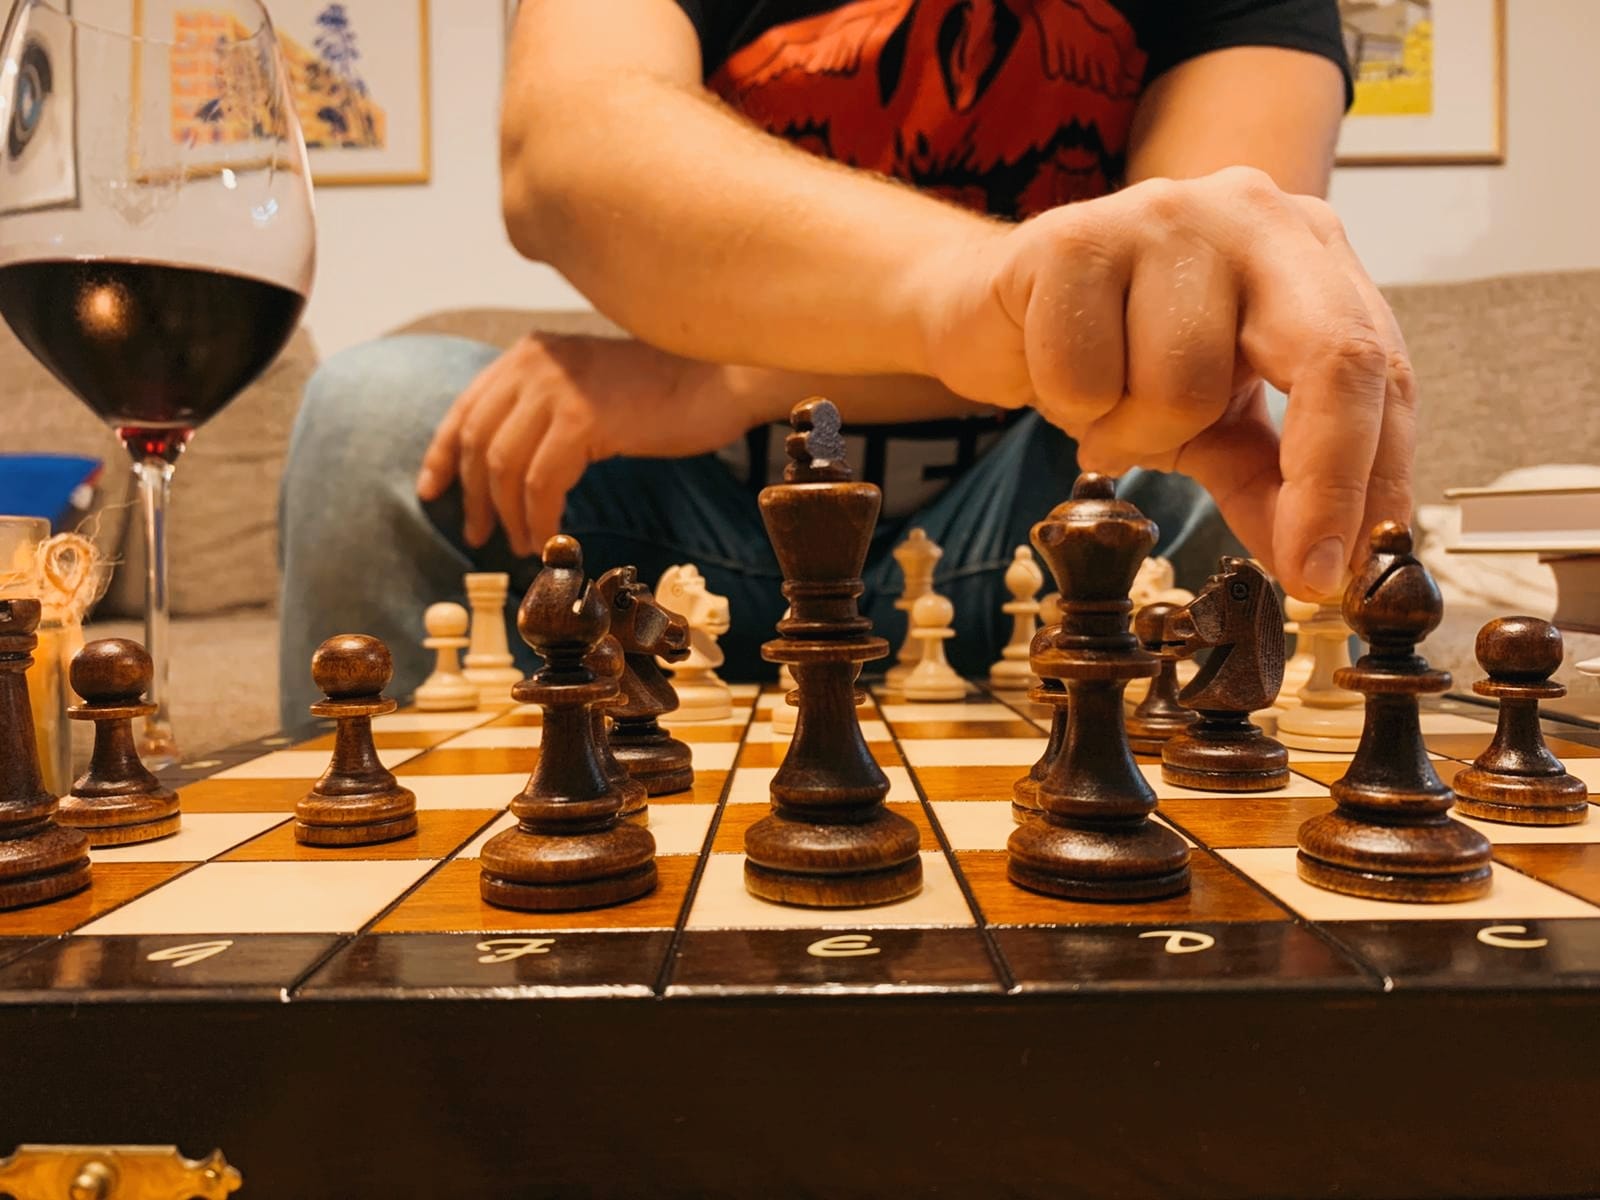 Tipy na dárky pro náročné šachisty